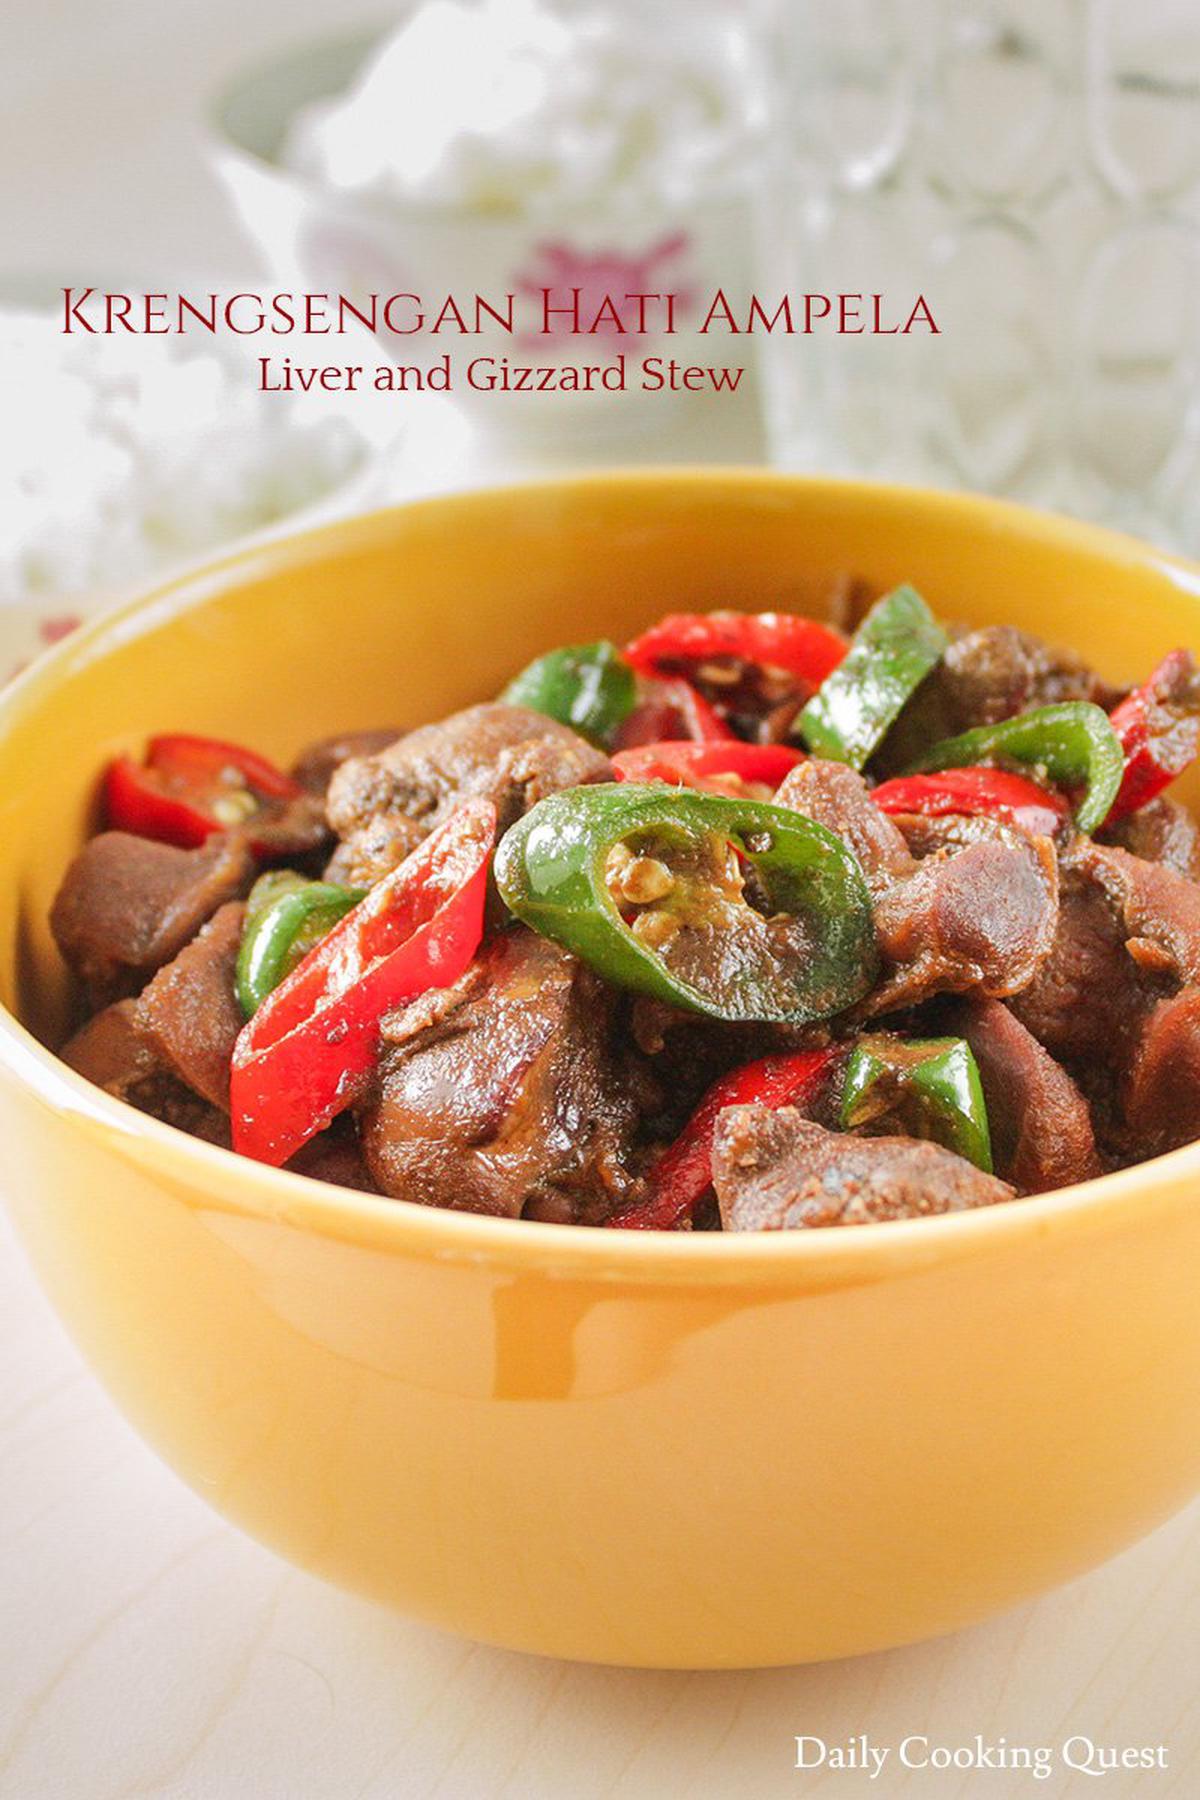 Krengsengan Hati Ampela - Liver and Gizzard Stew